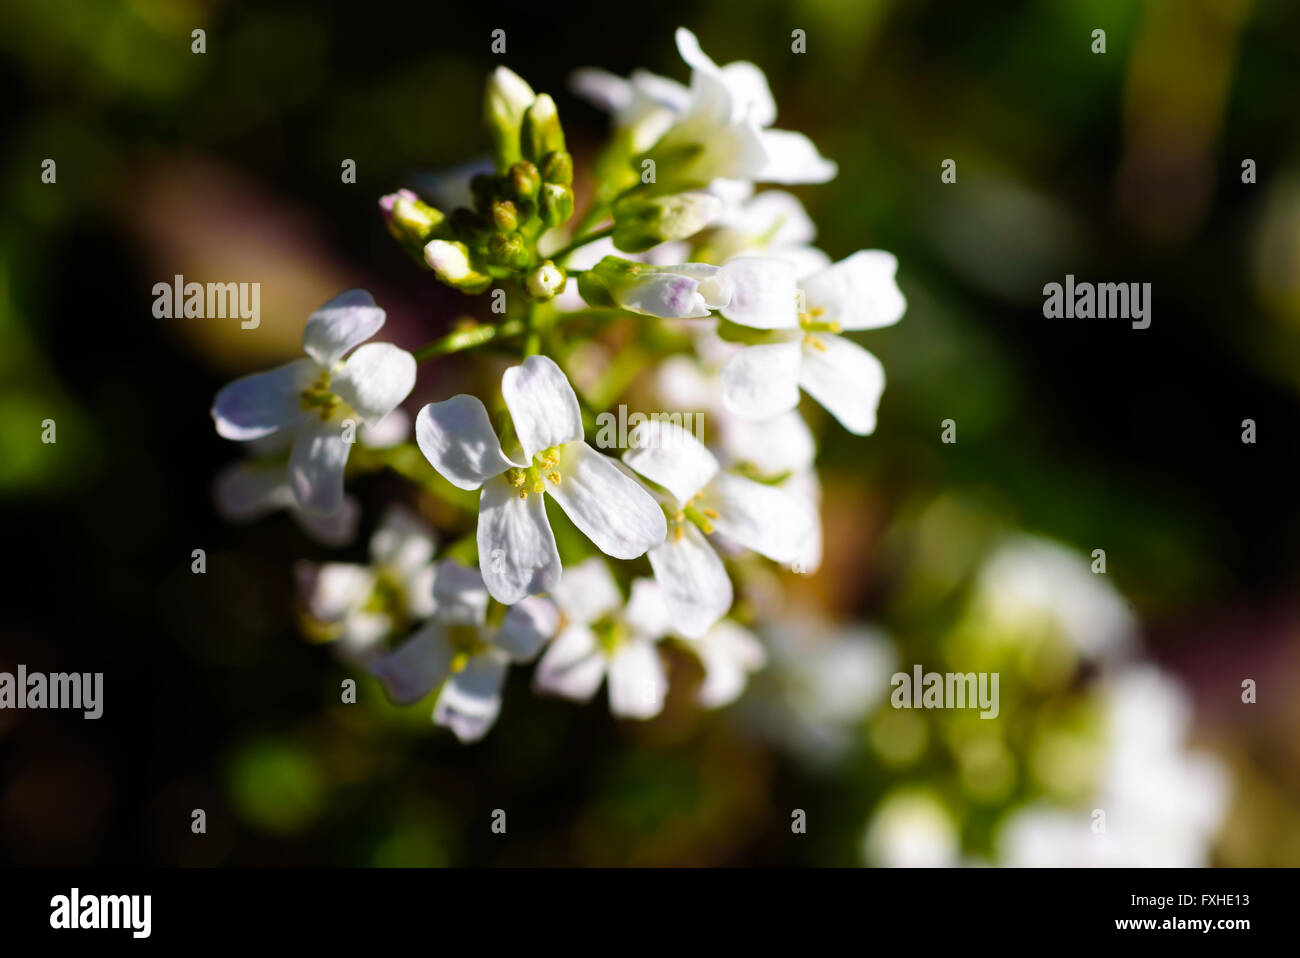 Arabis procurrens, la diffusione rock crescione. Dettaglio dei fiori bianchi close up. Foto Stock